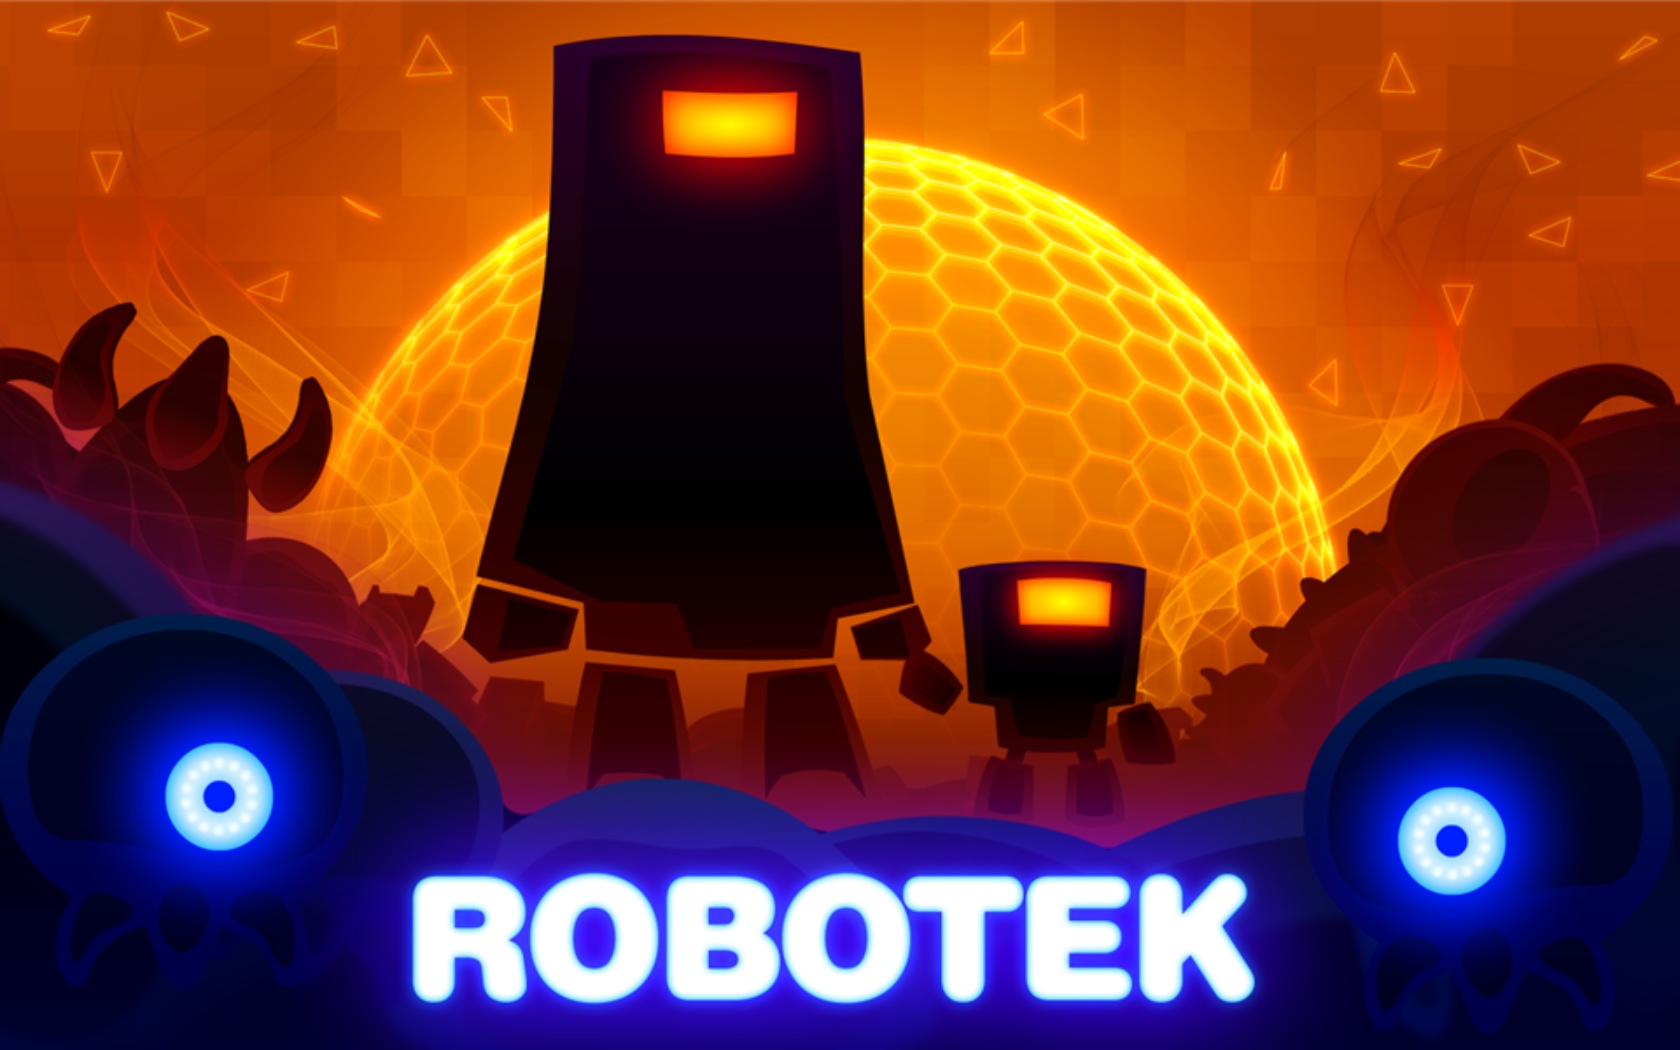 Robotek 2.2 : Main window